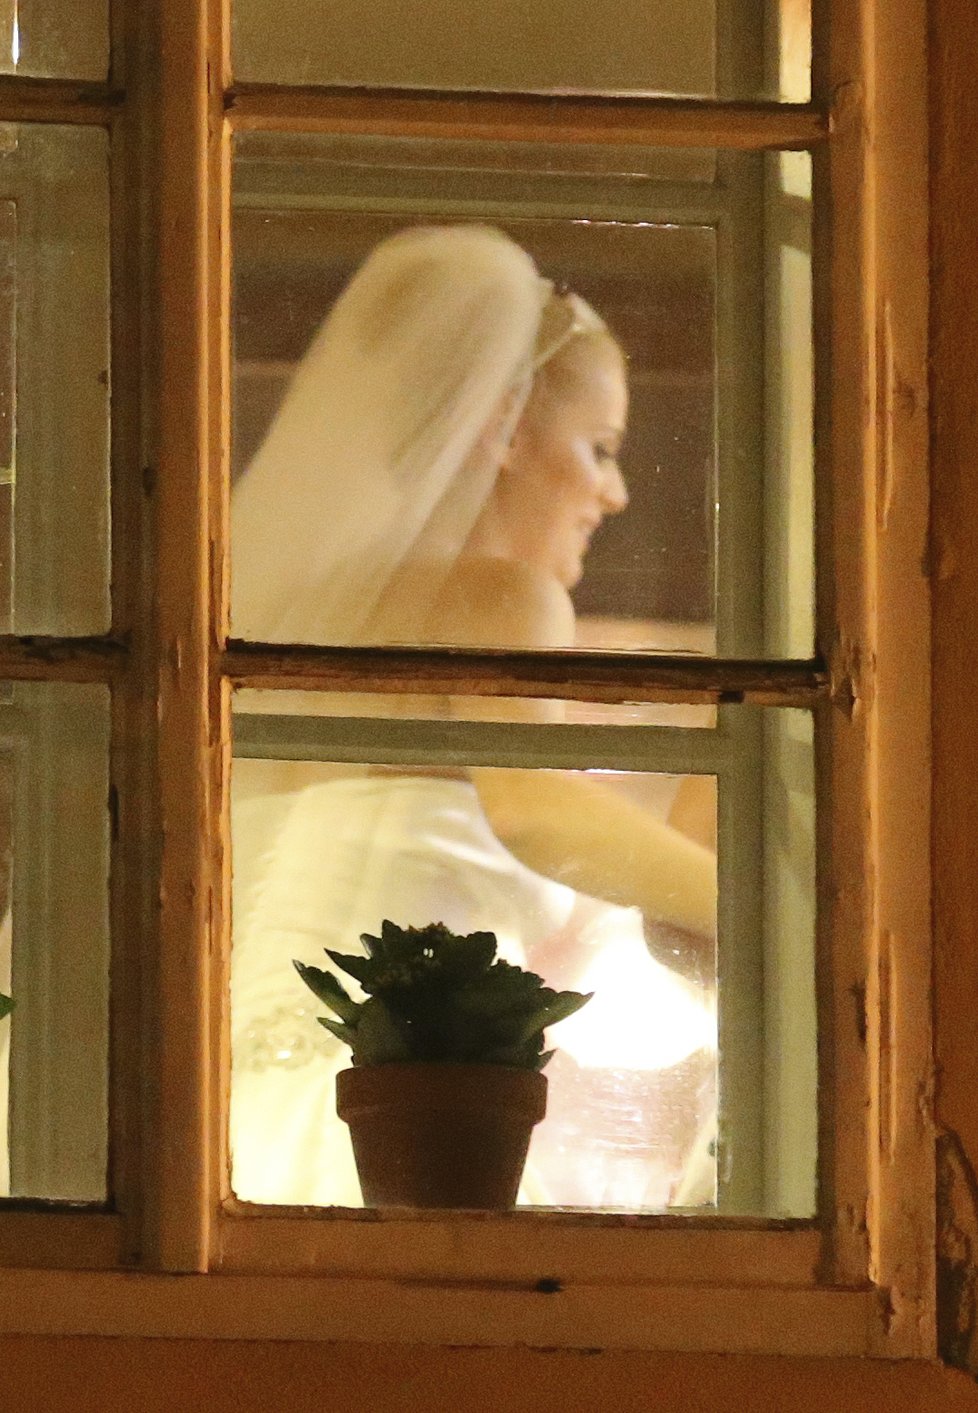 Ornellina svatba probíhala za zavřenými dveřmi... v oknech ale občas někdo vykouknul!